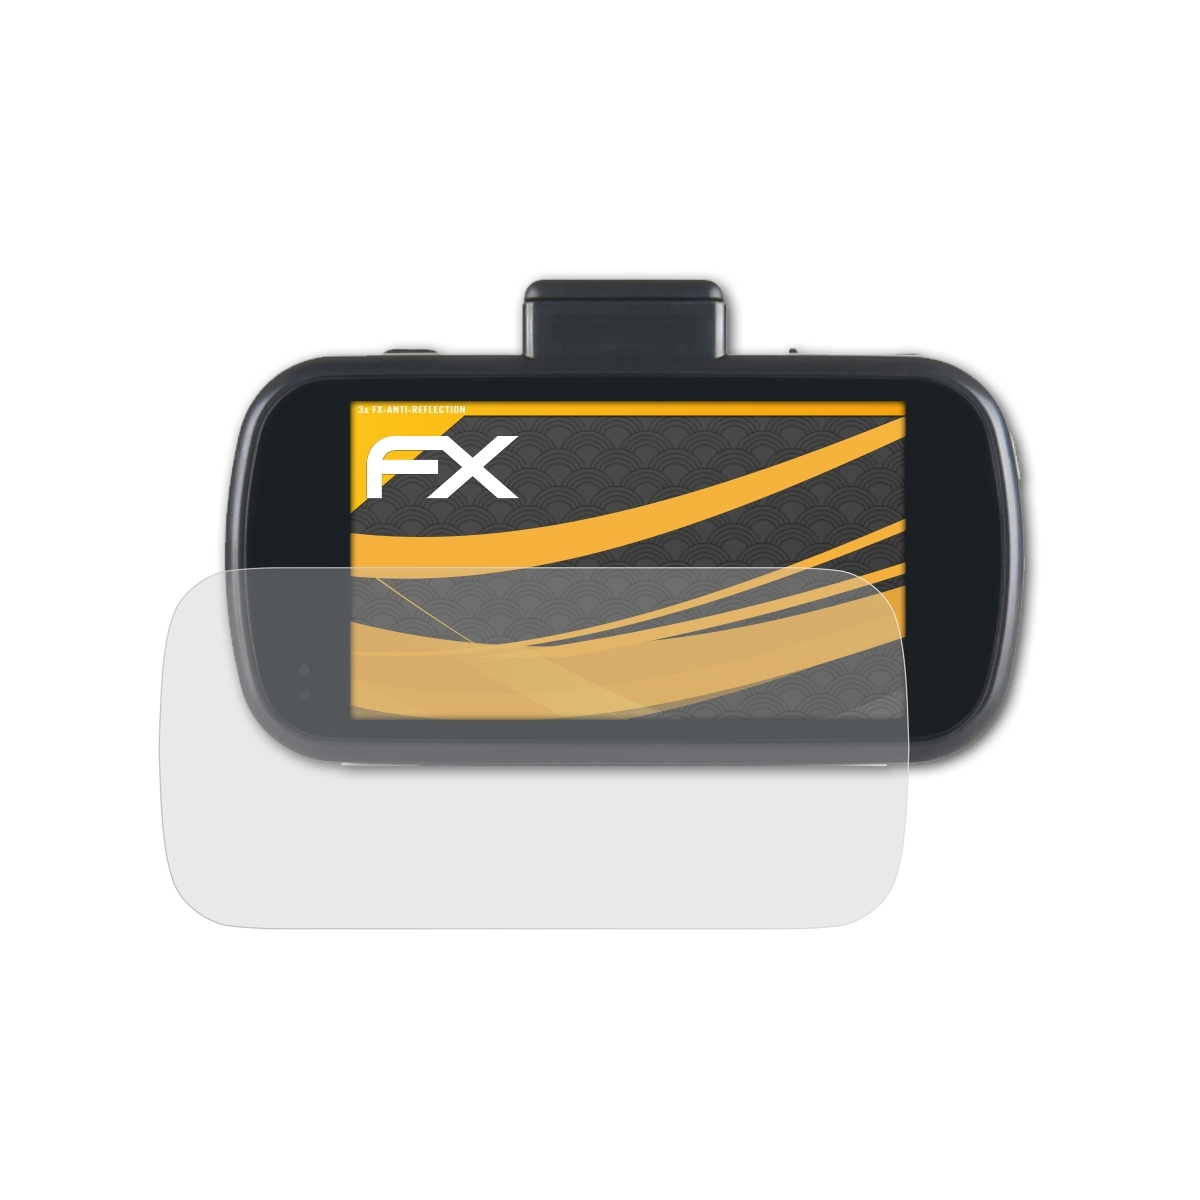 ATFOLIX 3x FX-Antireflex Displayschutz(für Nextbase 612GW)